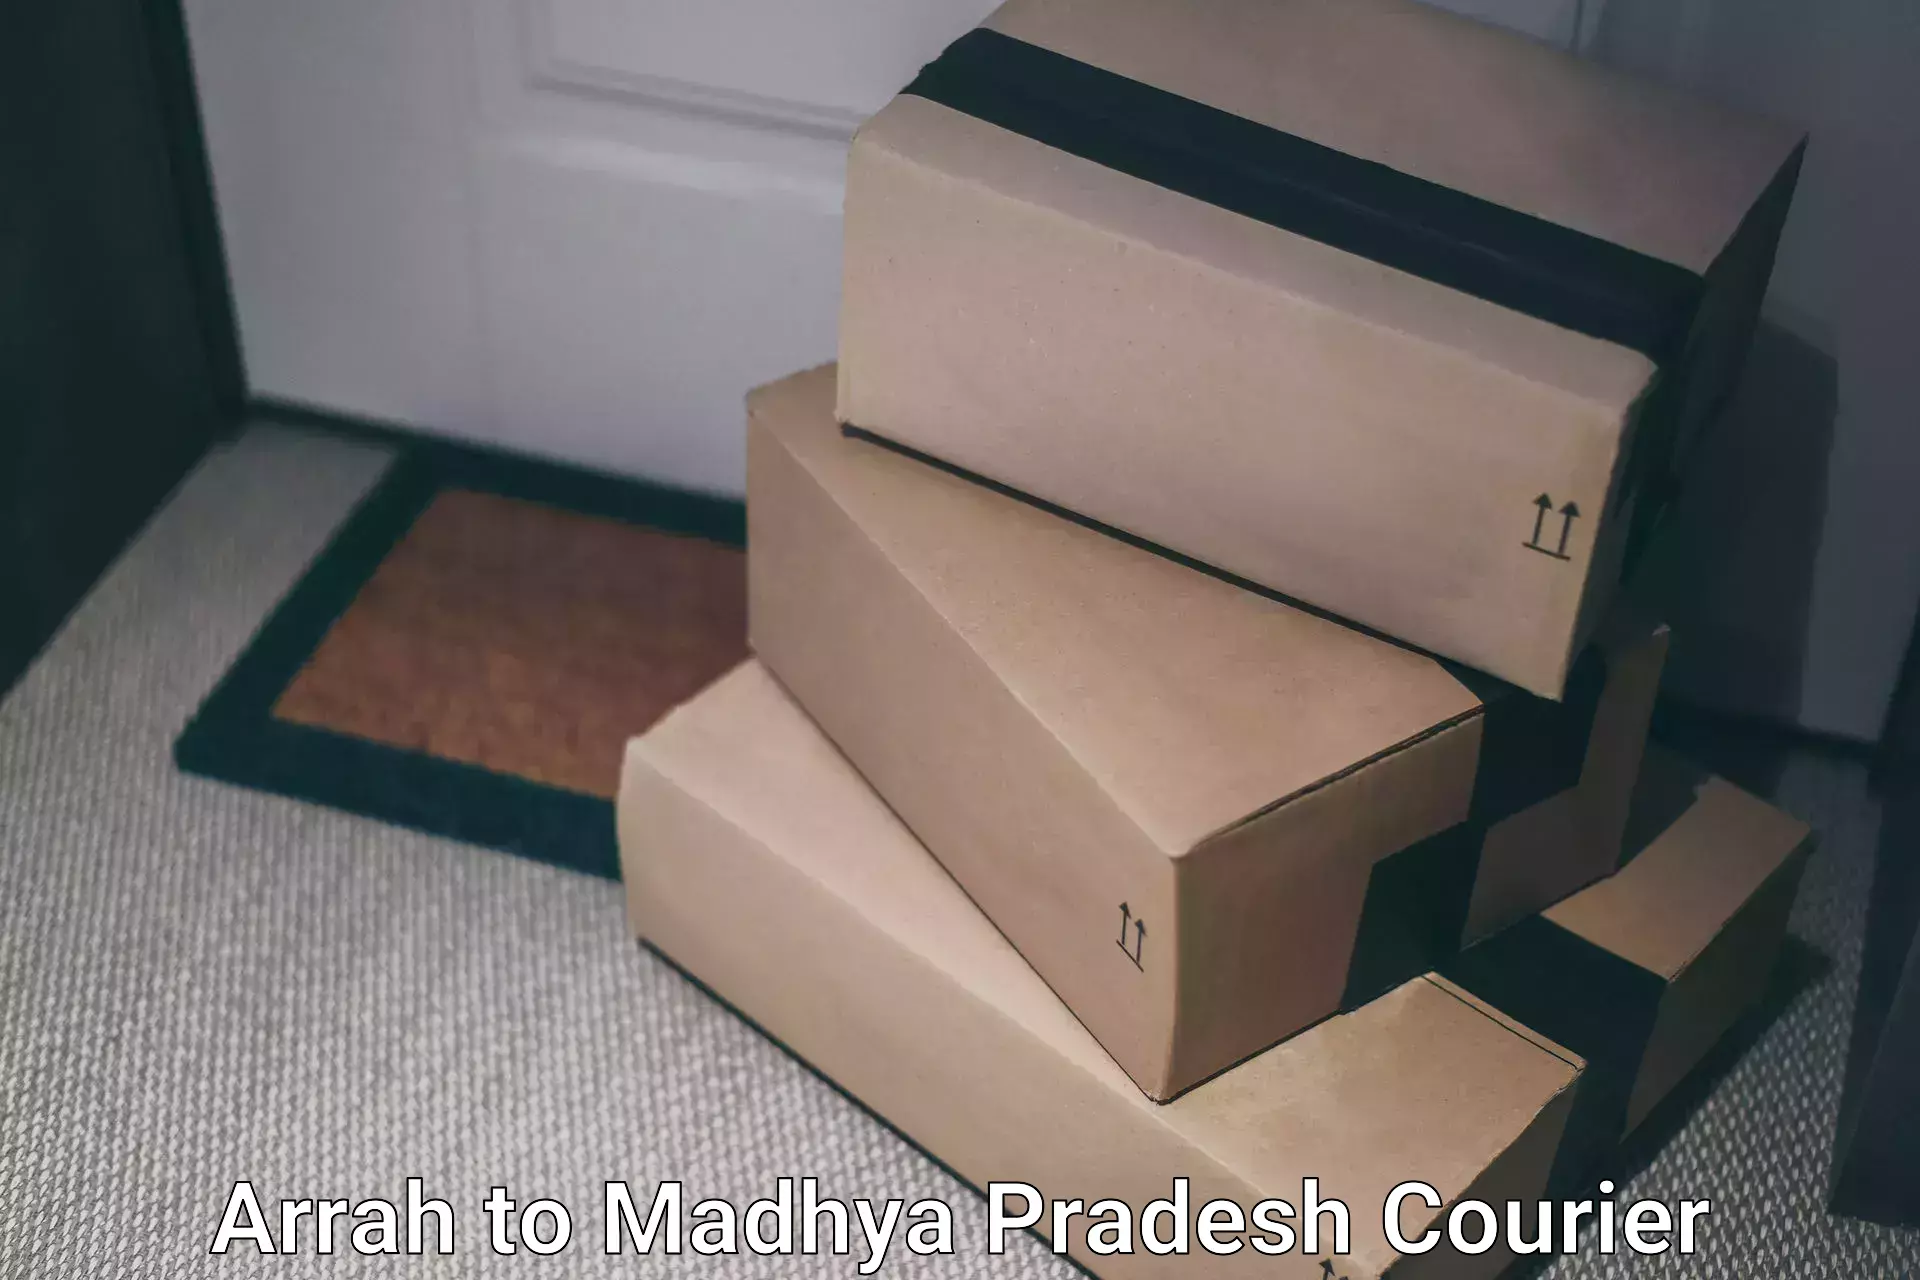 Express courier capabilities Arrah to Ujjain